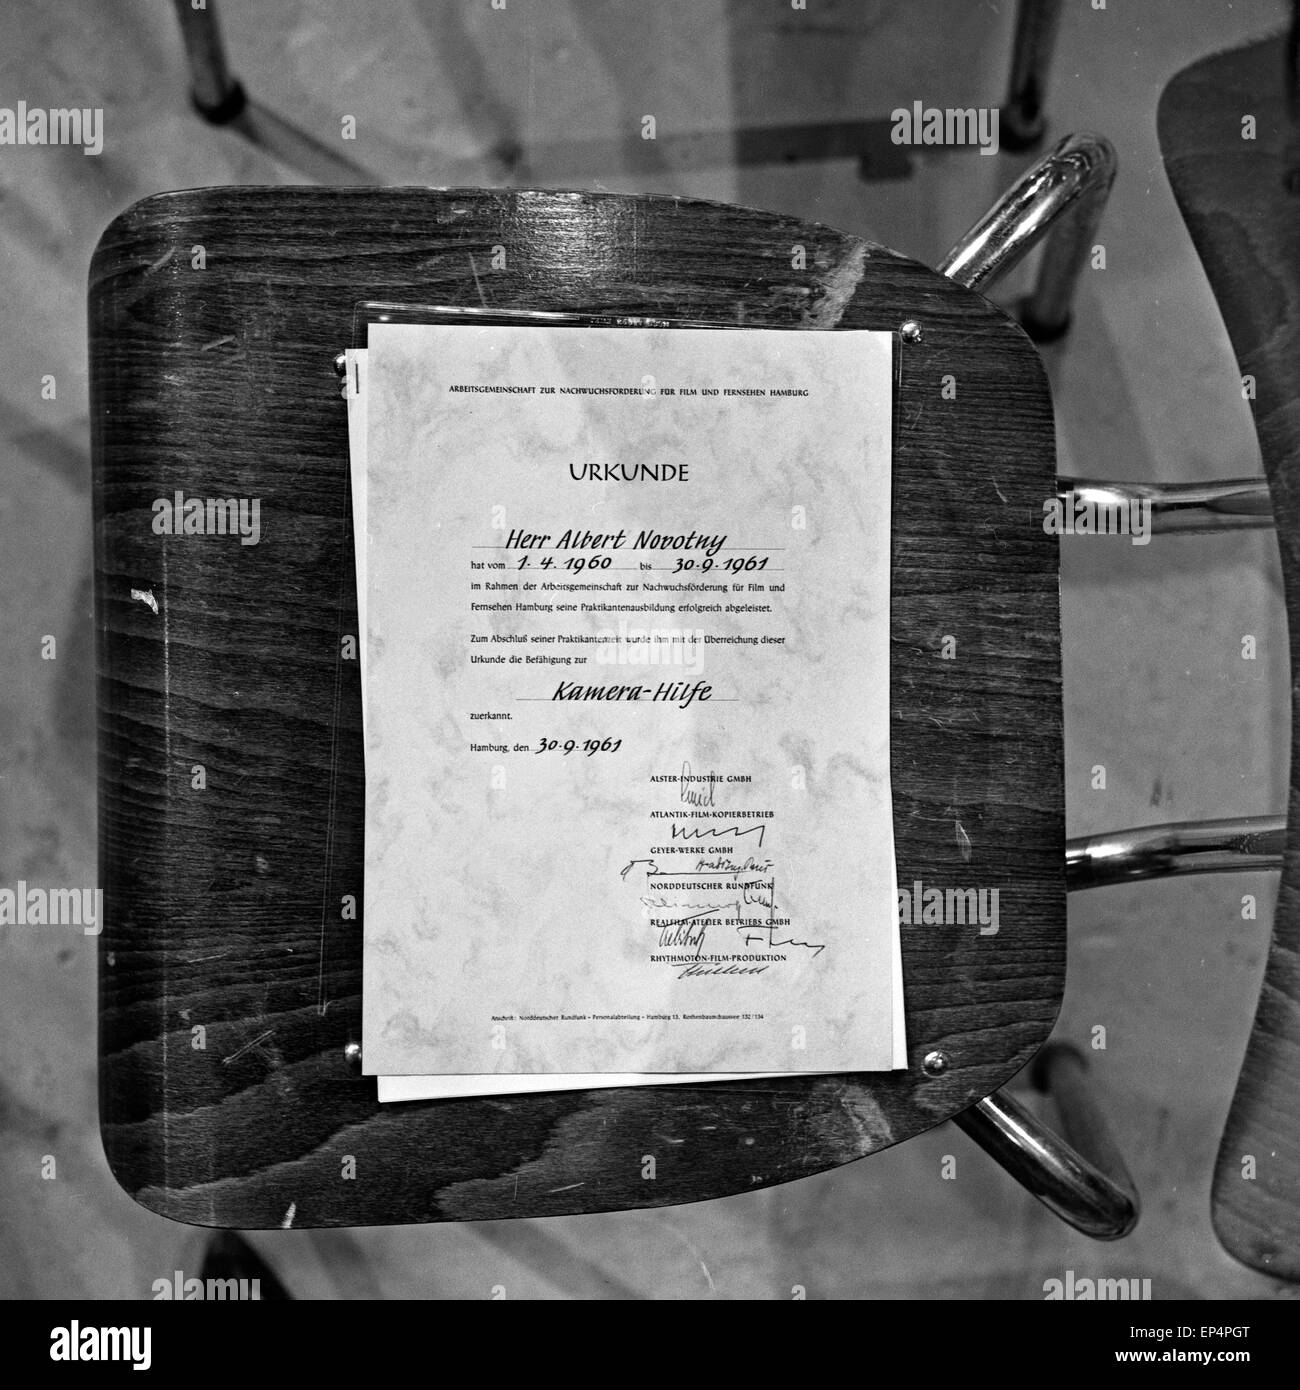 Die Arbeitsgemeinschaft zur Nachwuchsförderung für Film und Fernsehen in  Hamburg stellt Herrn Albert Novotny dieses Praktikumsze Stock Photo - Alamy